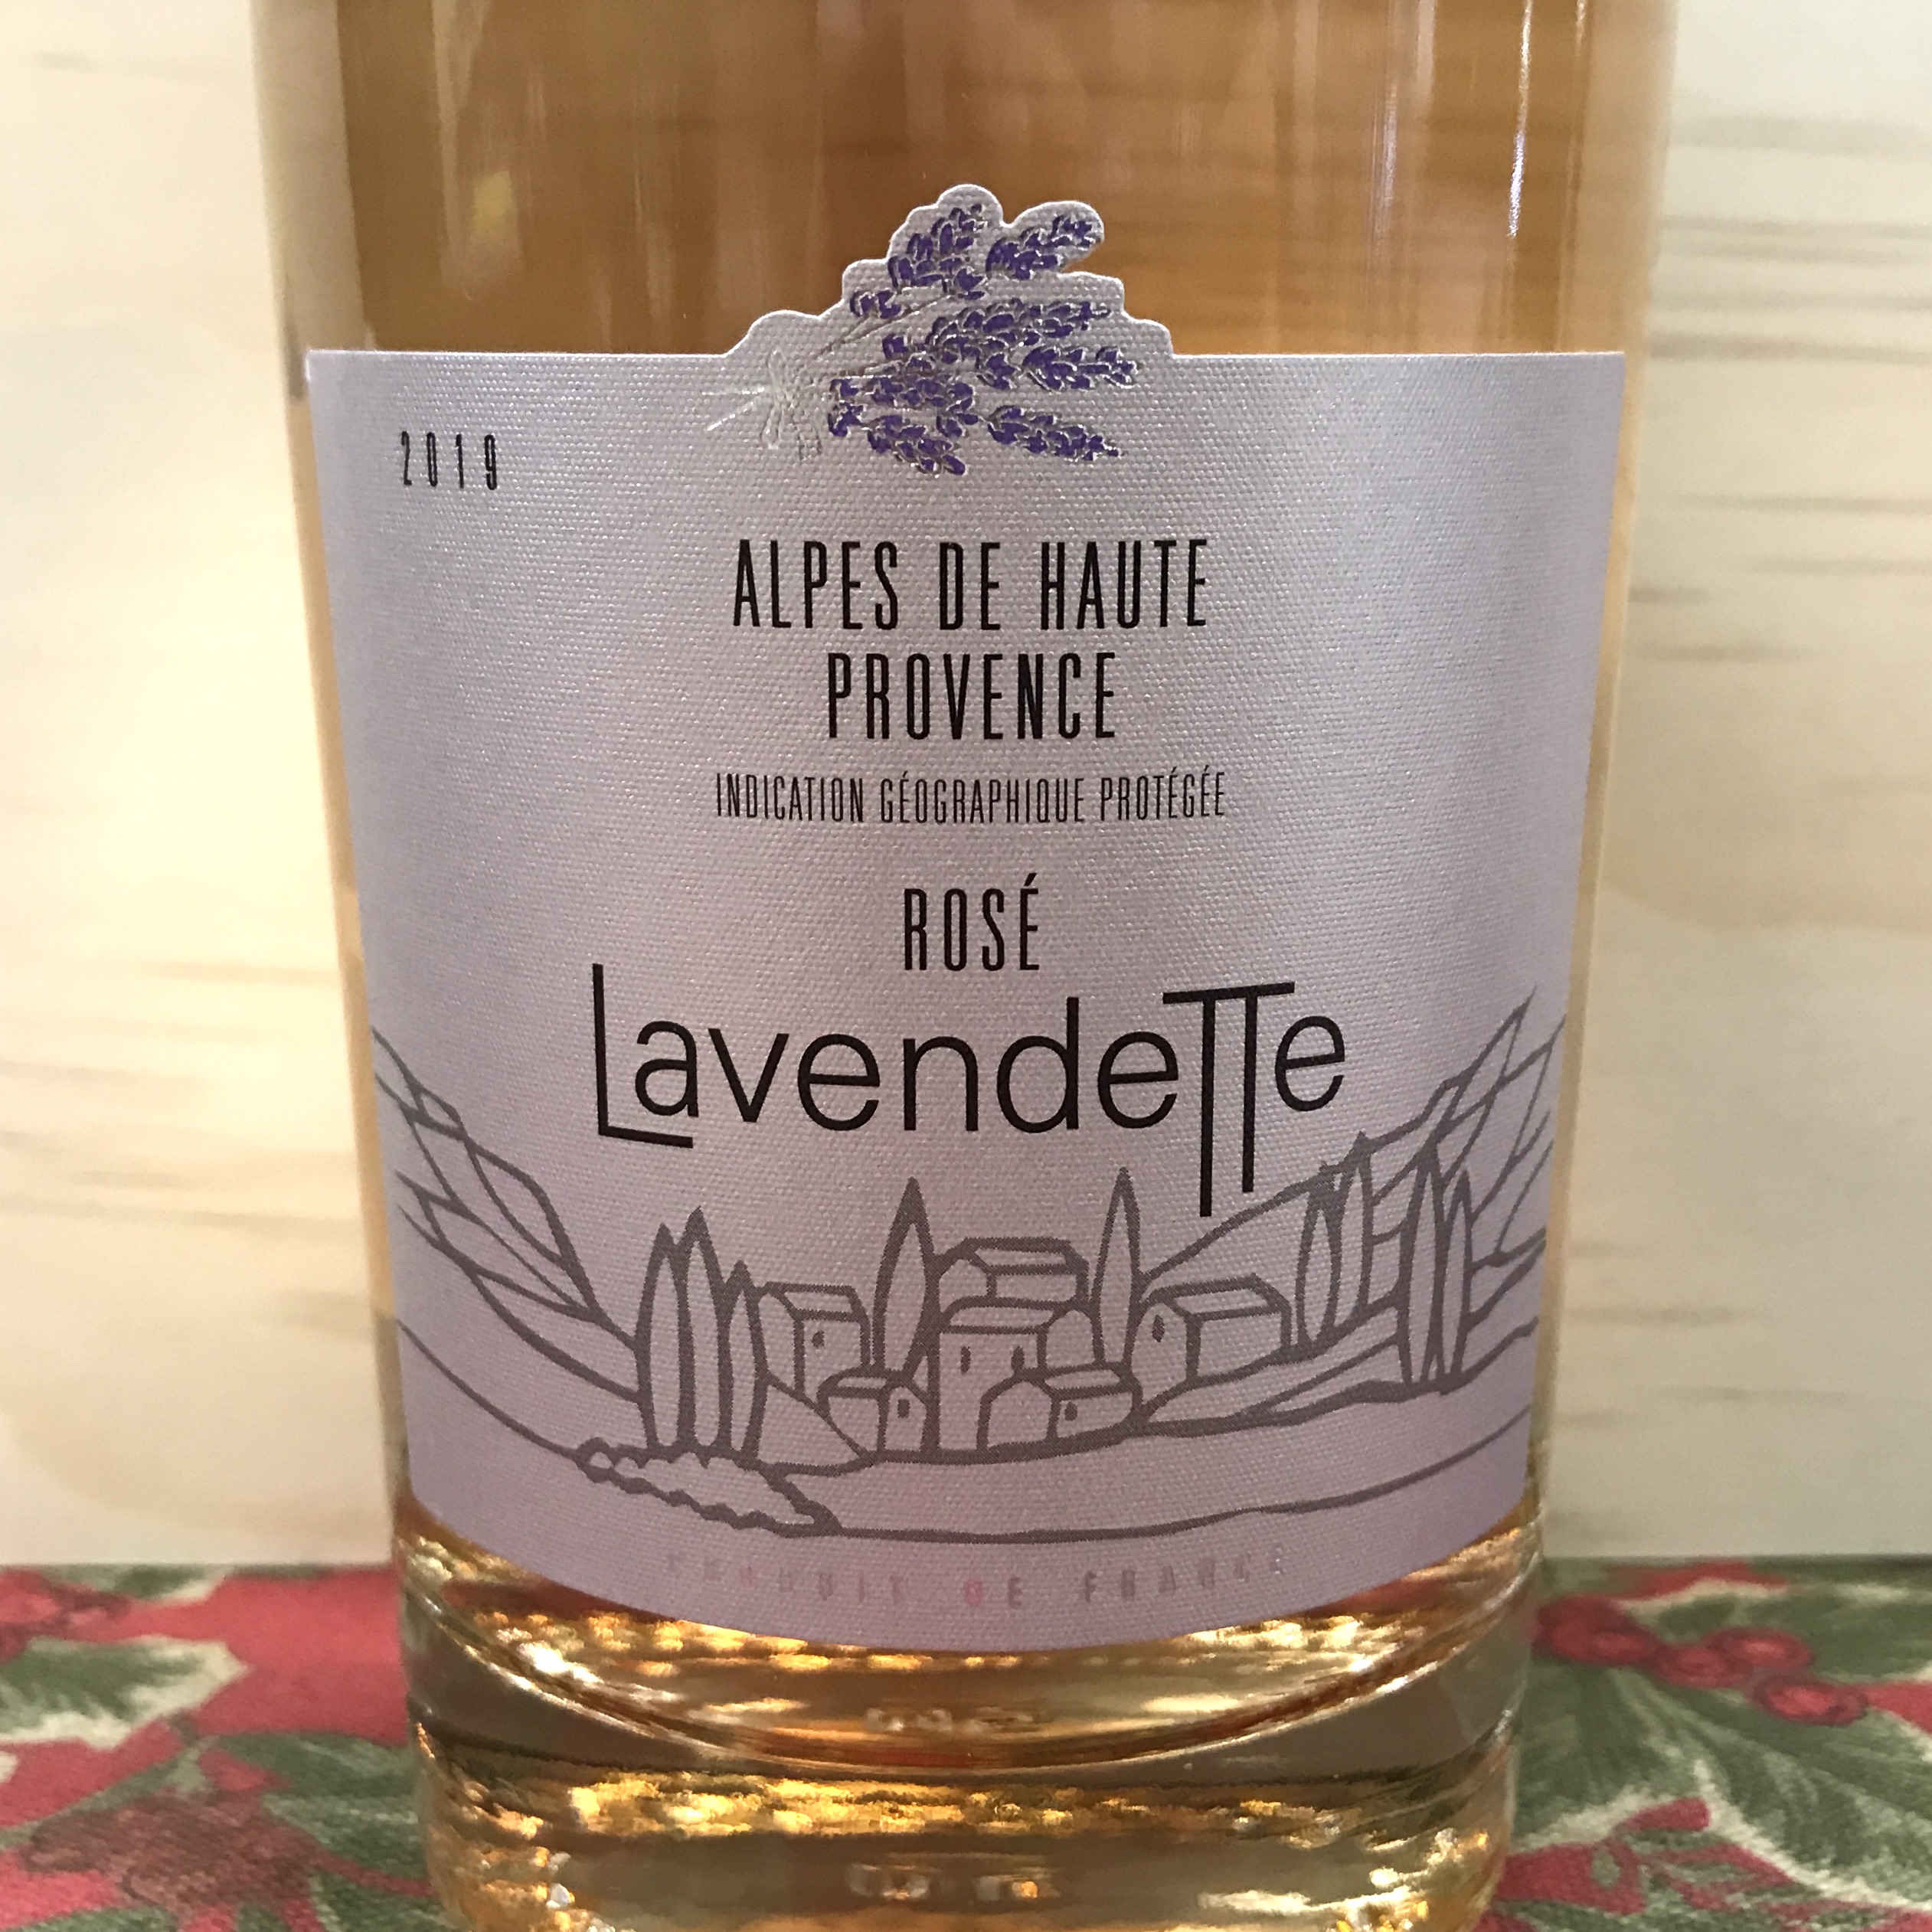 Lavendette Alpes de Haute Provence Rose 2021